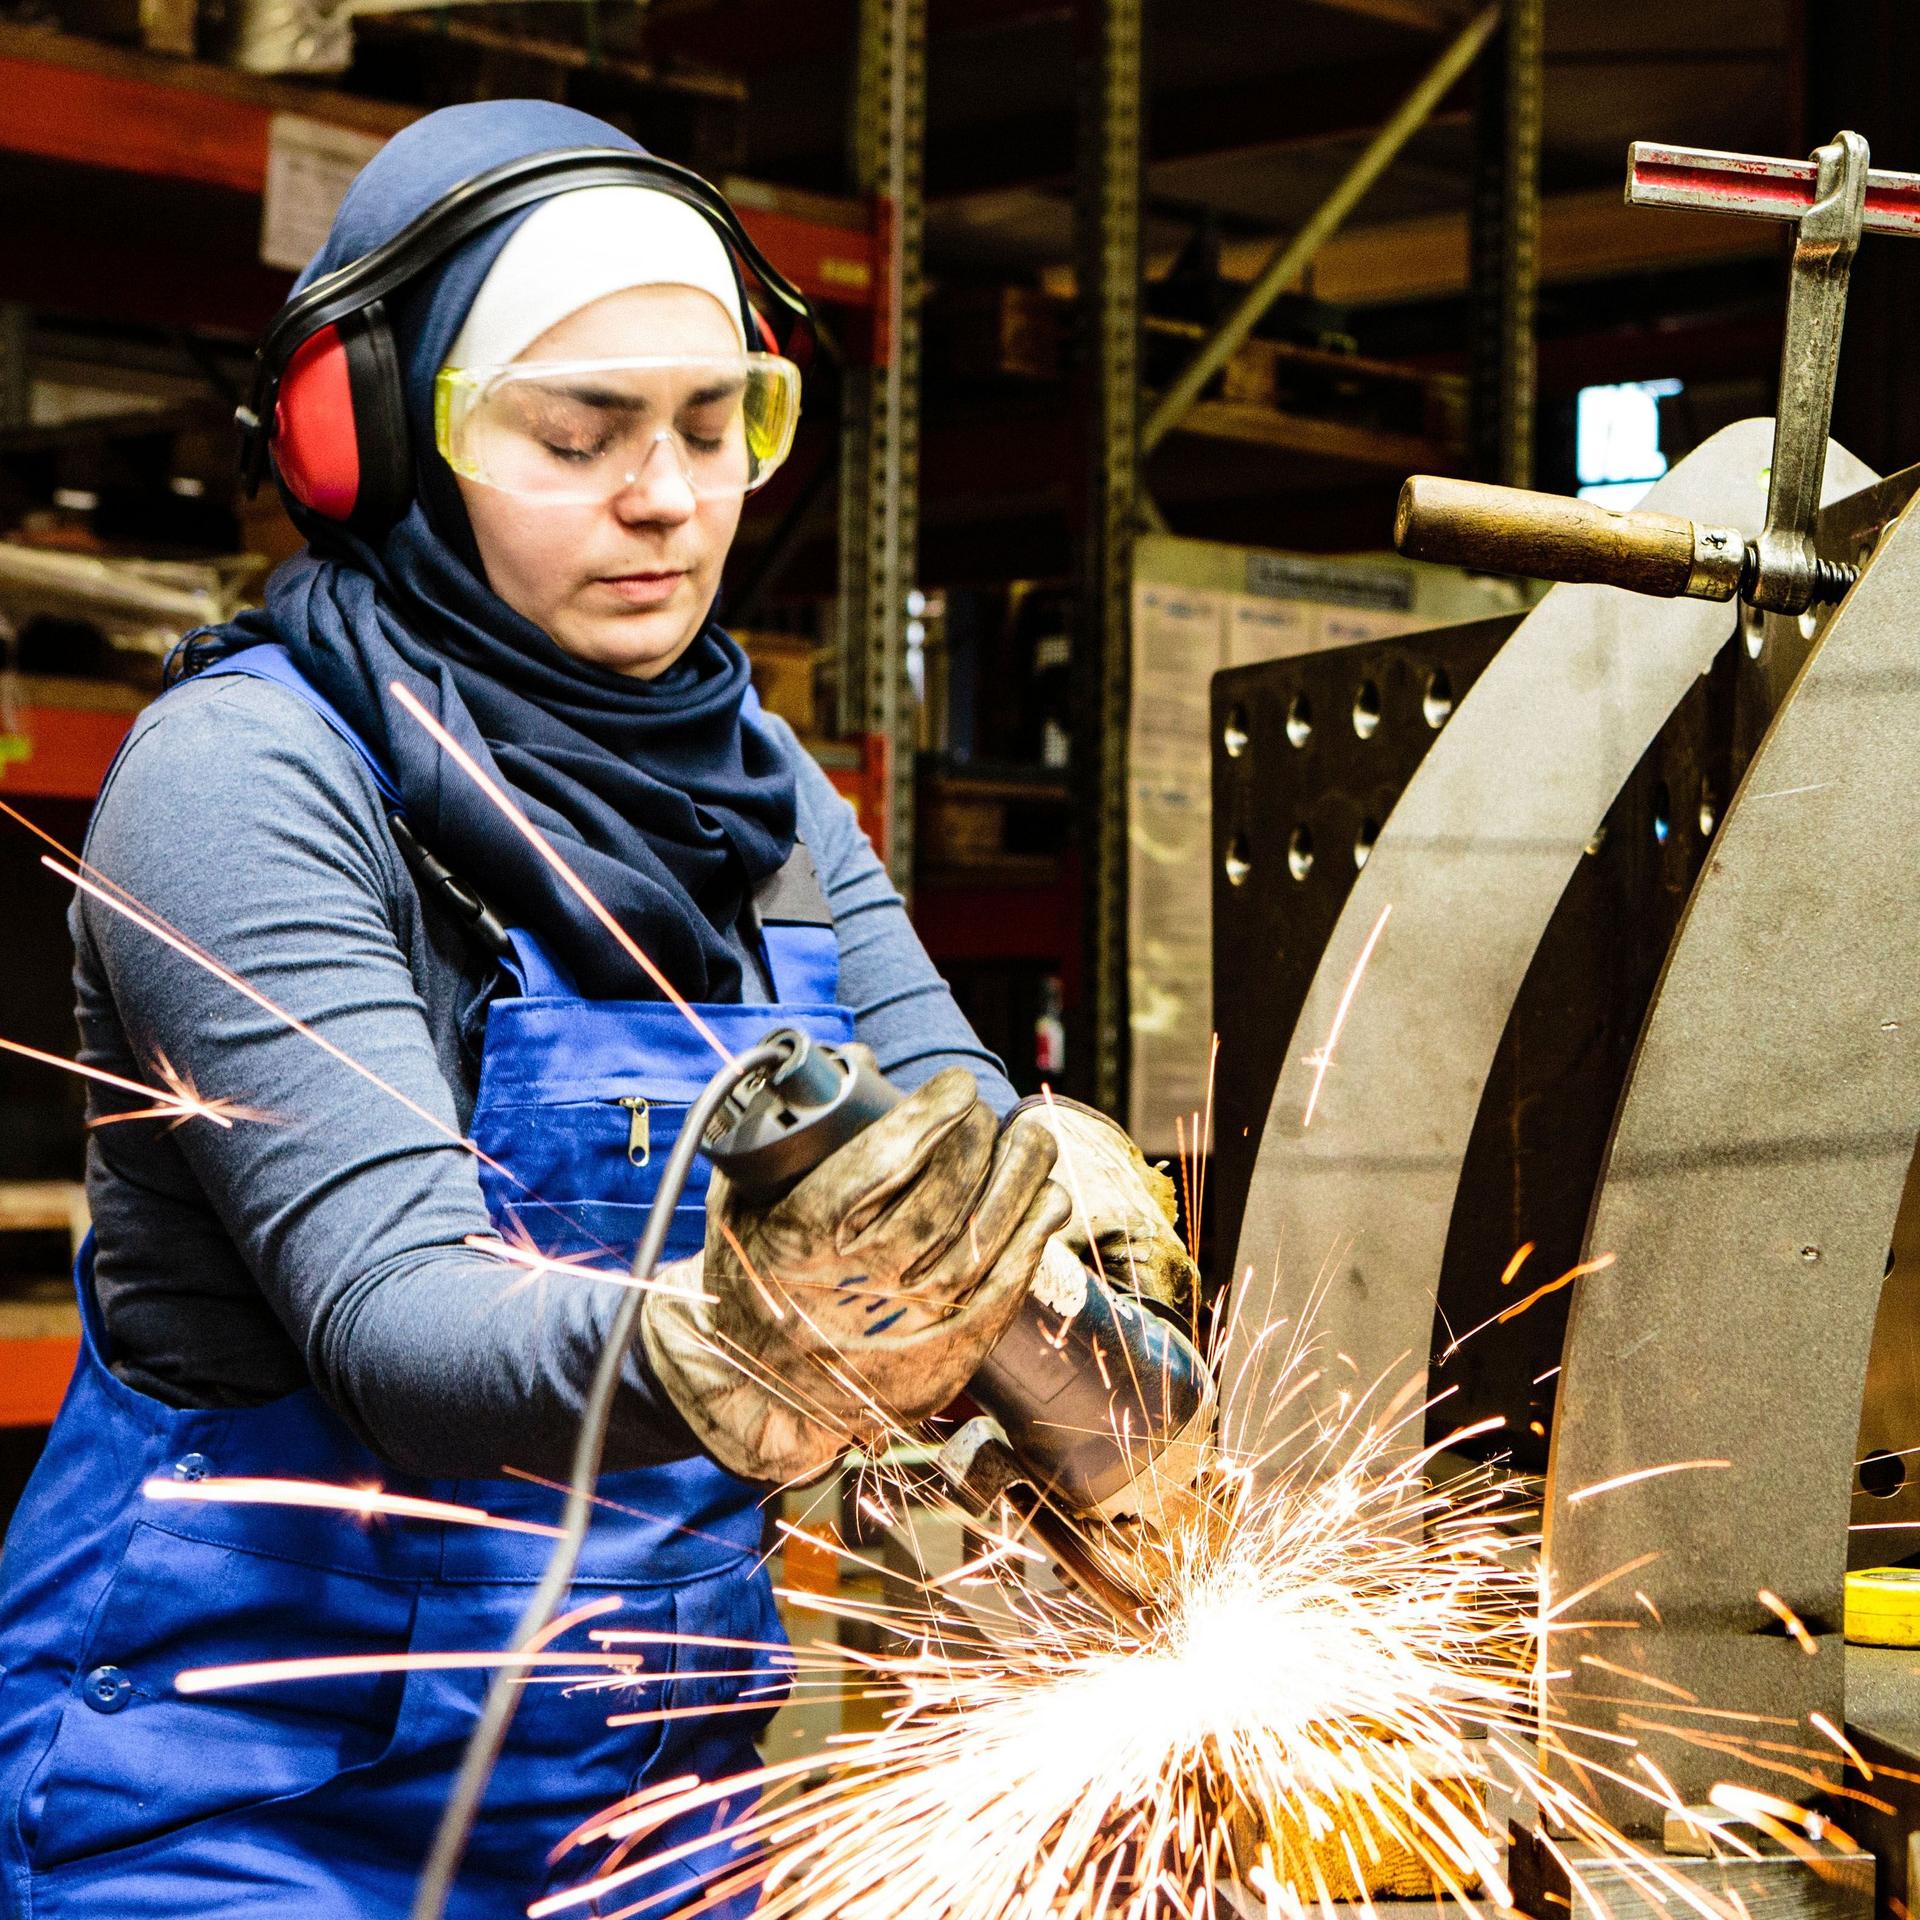 Eine junge Frau mit Kopftuch steht in einer Metall-Werkstatt. Sie arbeitet an einem Werkstück.